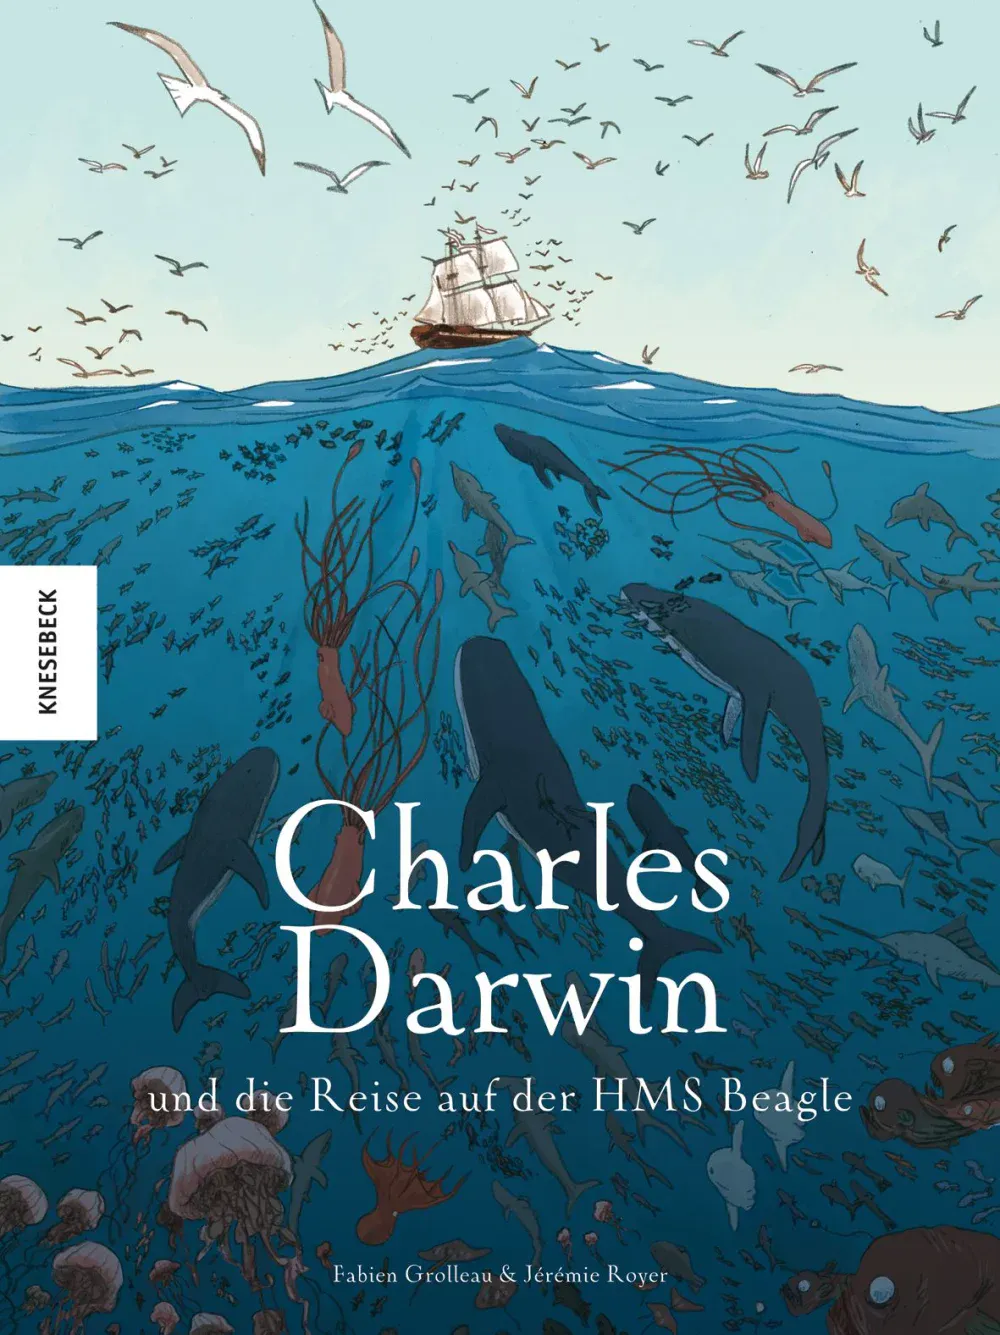 Cover des Comics "Charles Darwin und die Reise auf der HMS Beagle" von Fabien Grolleau und Jérémie Royer aus dem Knesebeck Verlag.